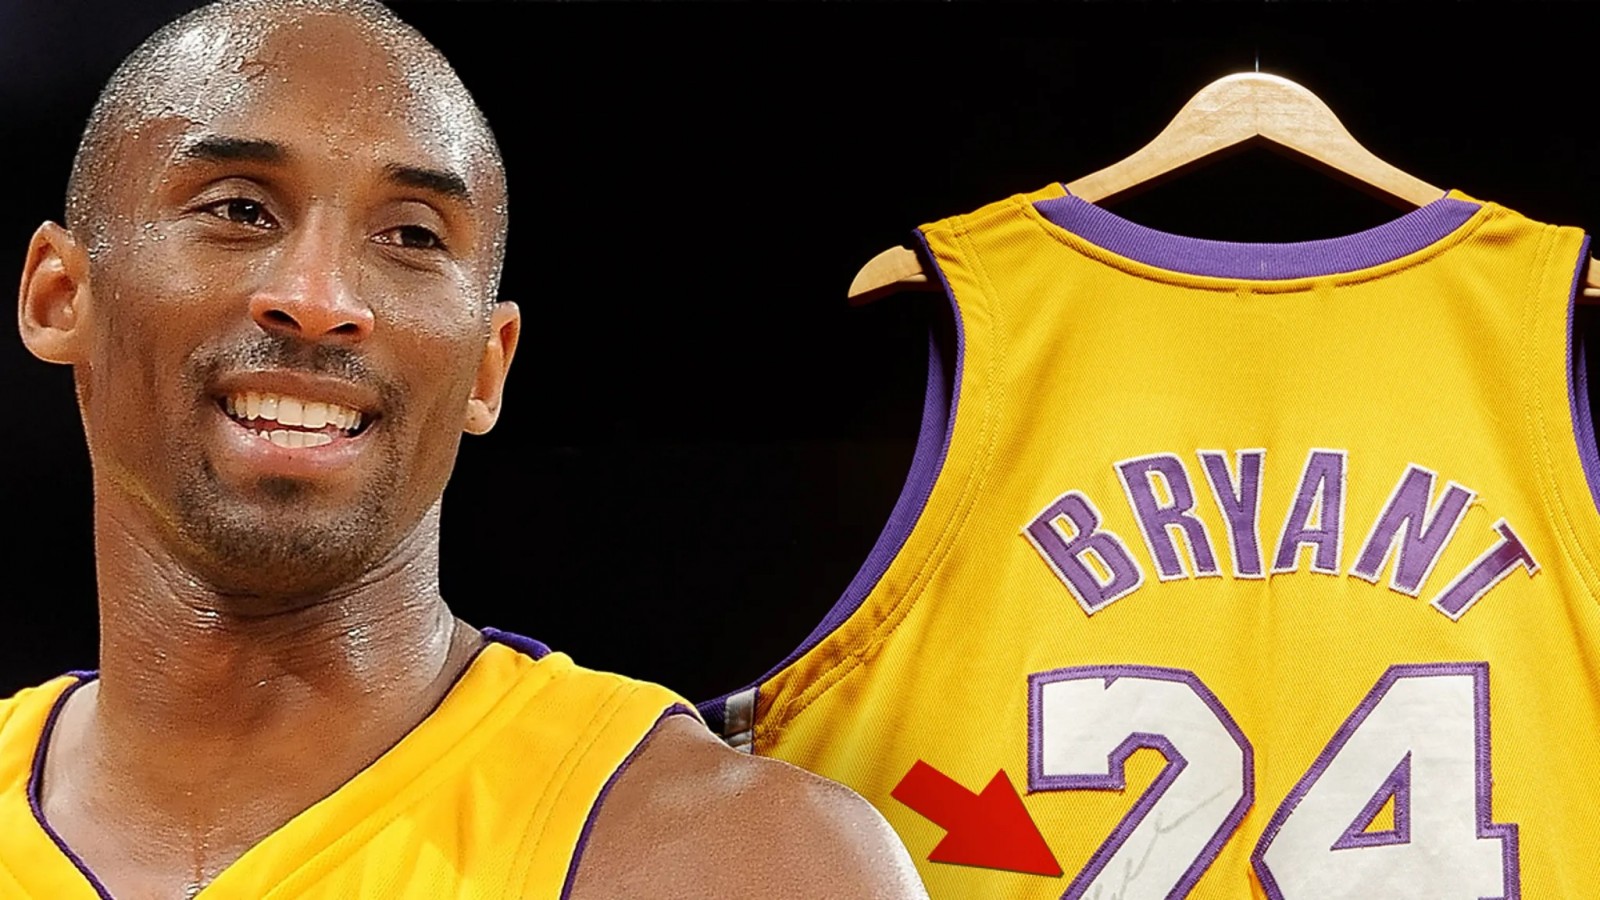 Chiếc Jersey giá trị nhất của Kobe Bryant đang được đấu giá